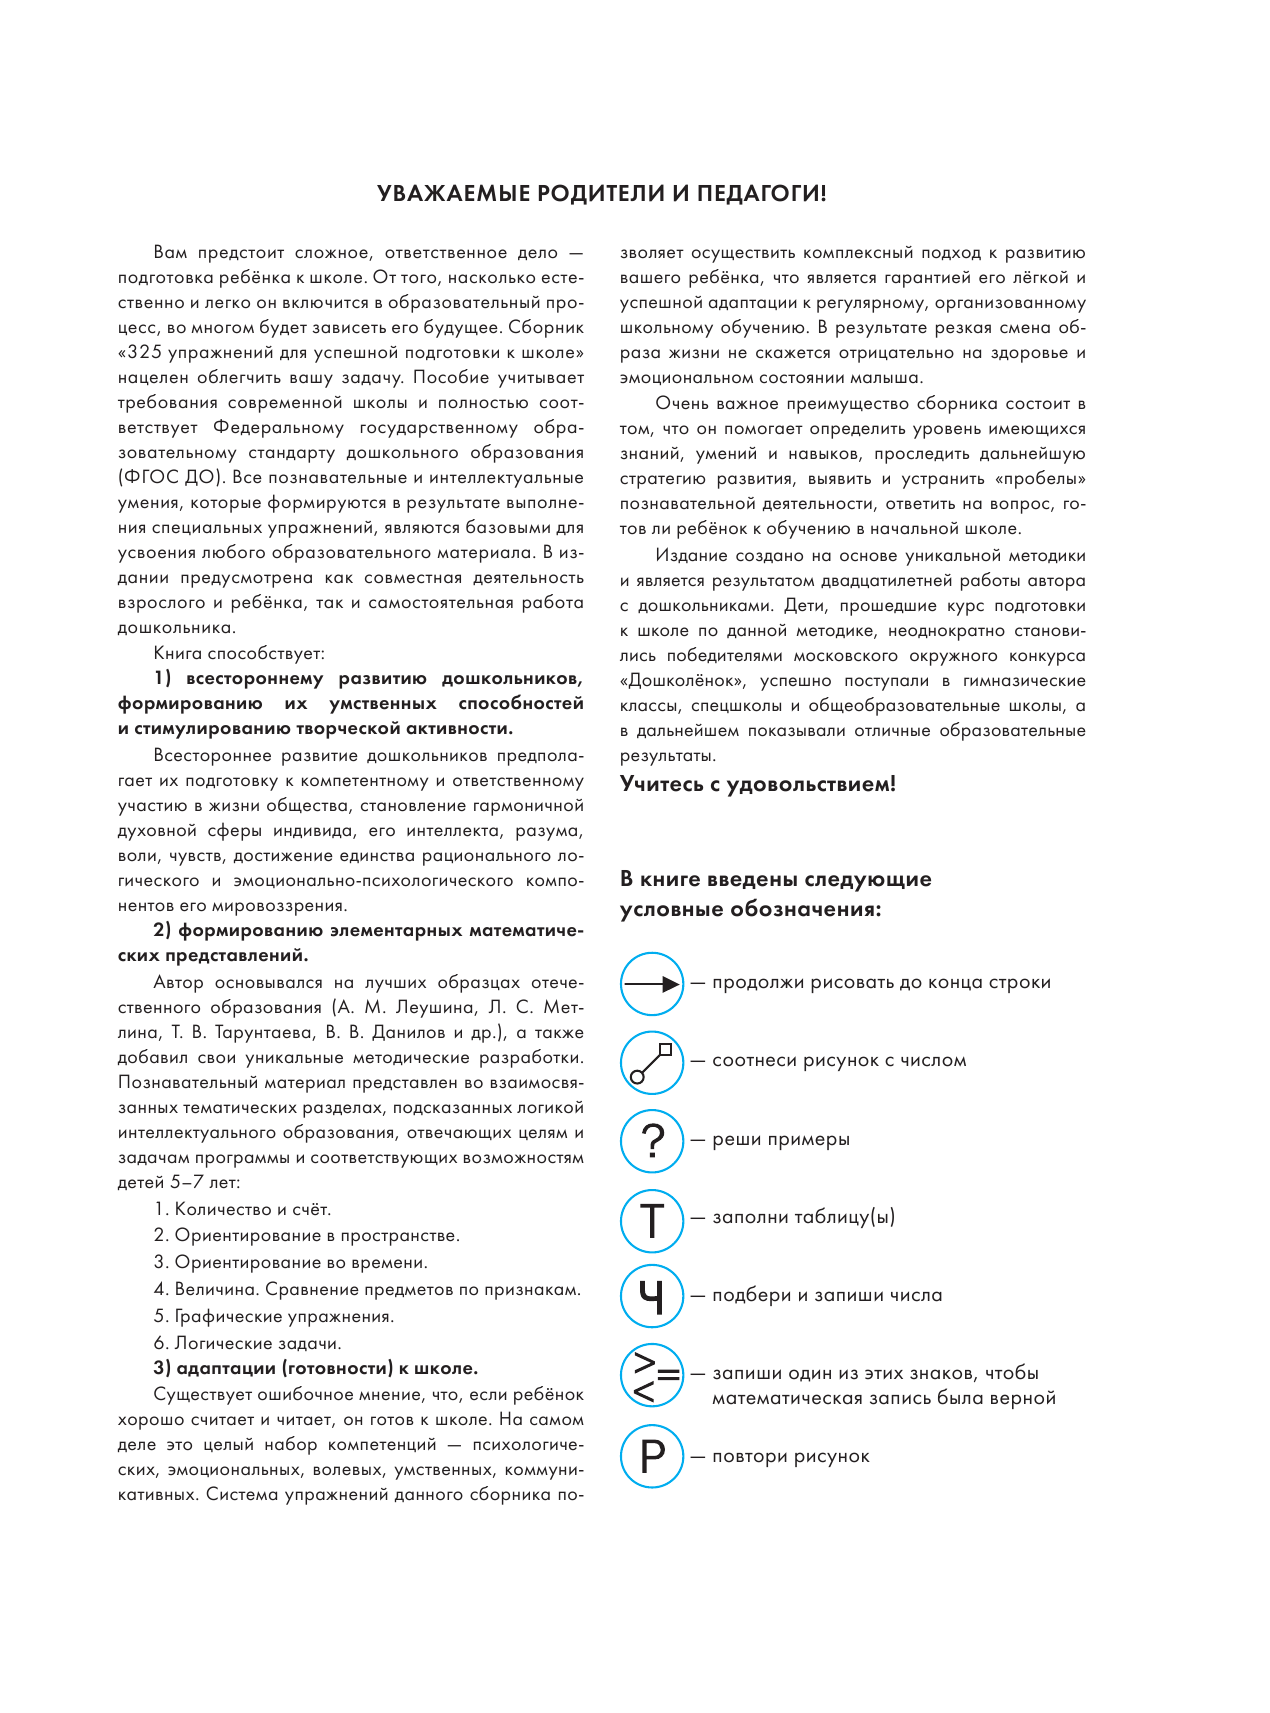 Шевелев Константин Валерьевич 325 упражнений для успешной подготовки к школе - страница 4